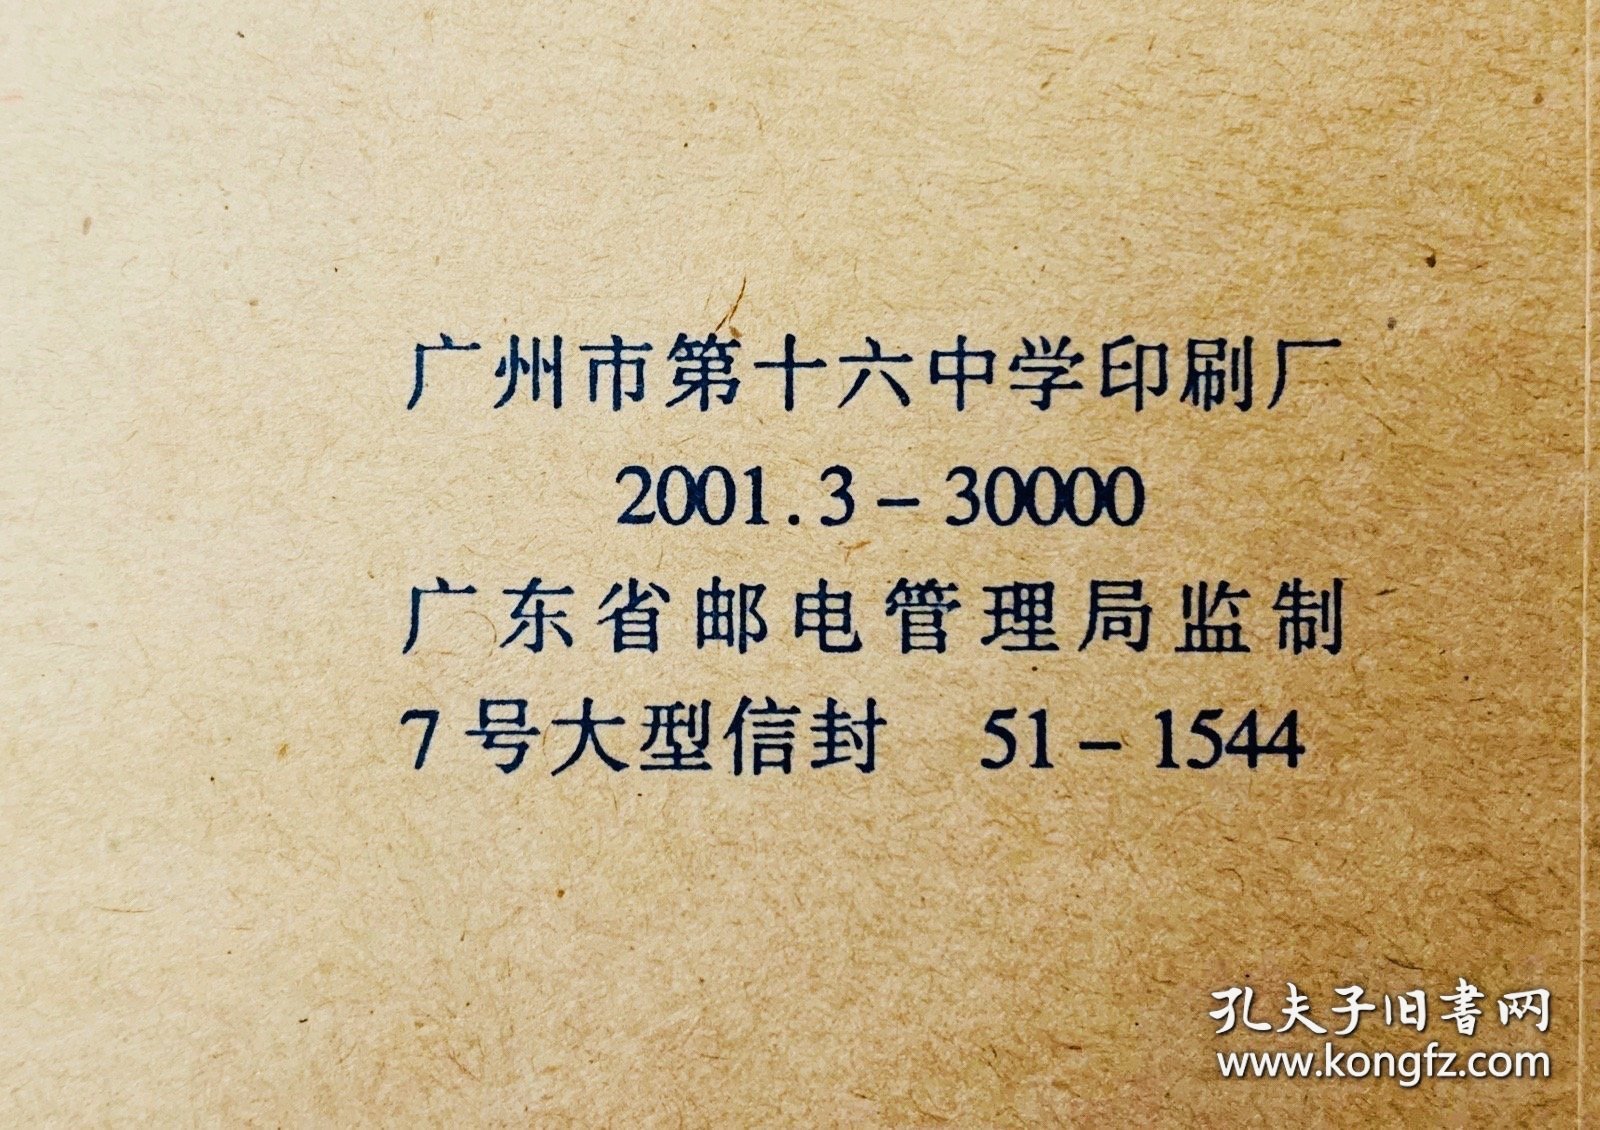 老信封收藏：【中国人民解放军某区司令部旧信封】（2001年7号中号信封）23x16（厘米）（广州第十六中学印刷、印量30000）。